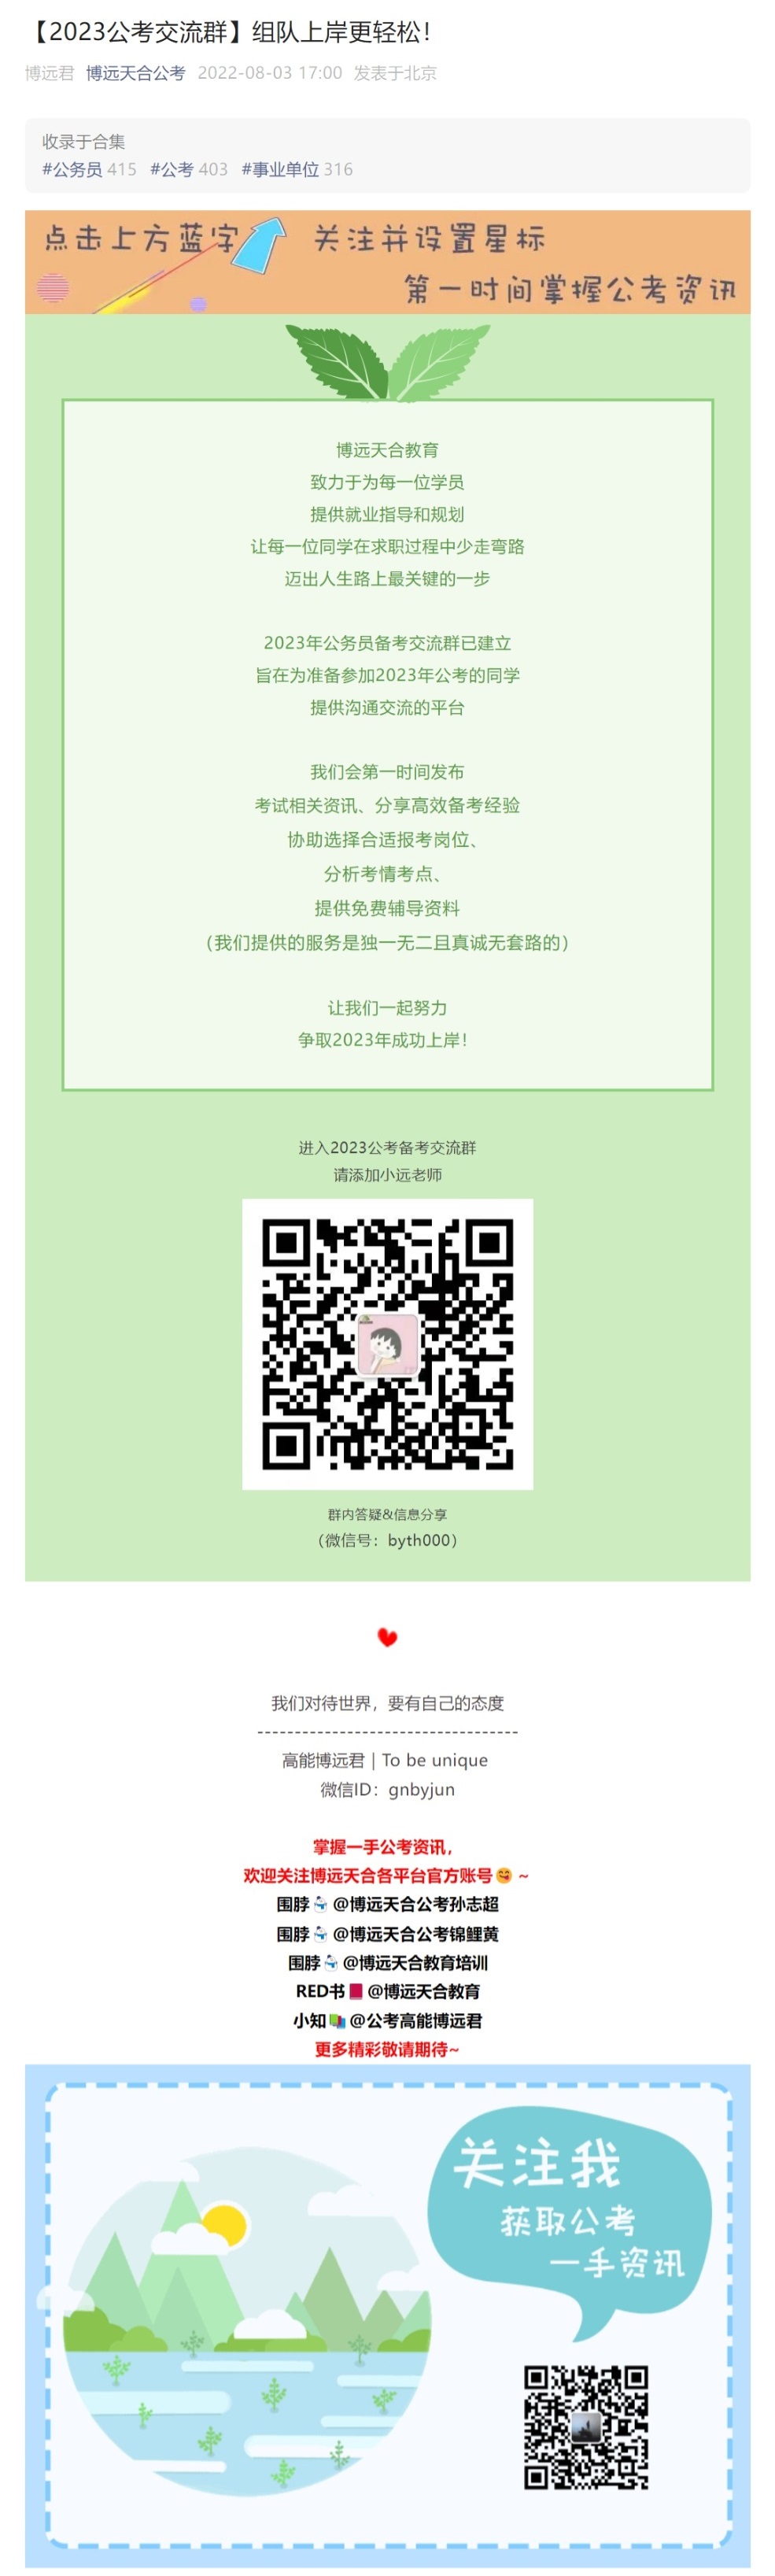 网页捕获_3-8-2022_18597_mp.weixin.qq.com.jpeg